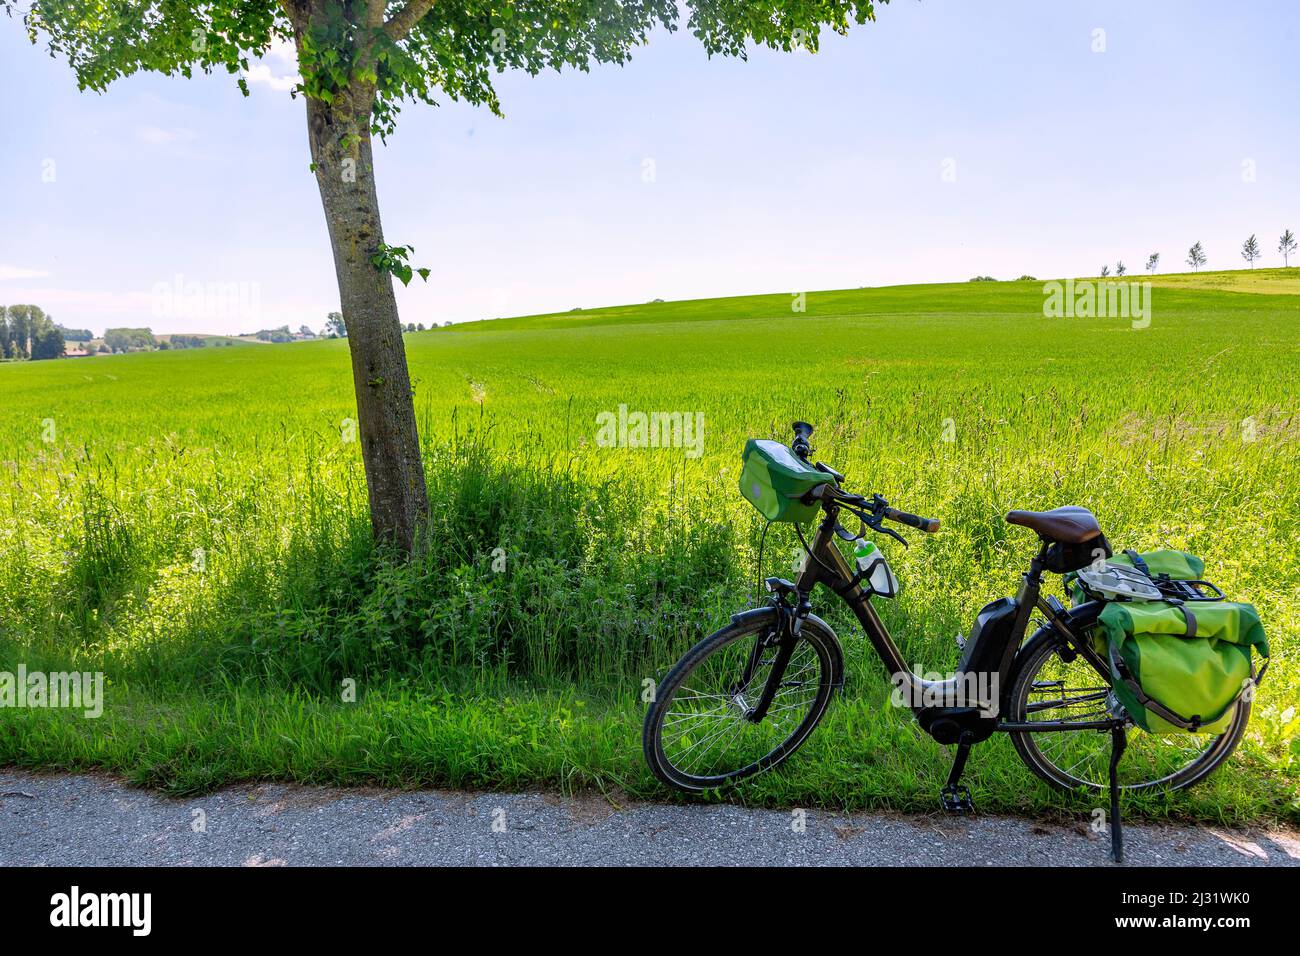 Vilstalradweg, vélo, paysage vallonné, champ de blé vert Banque D'Images